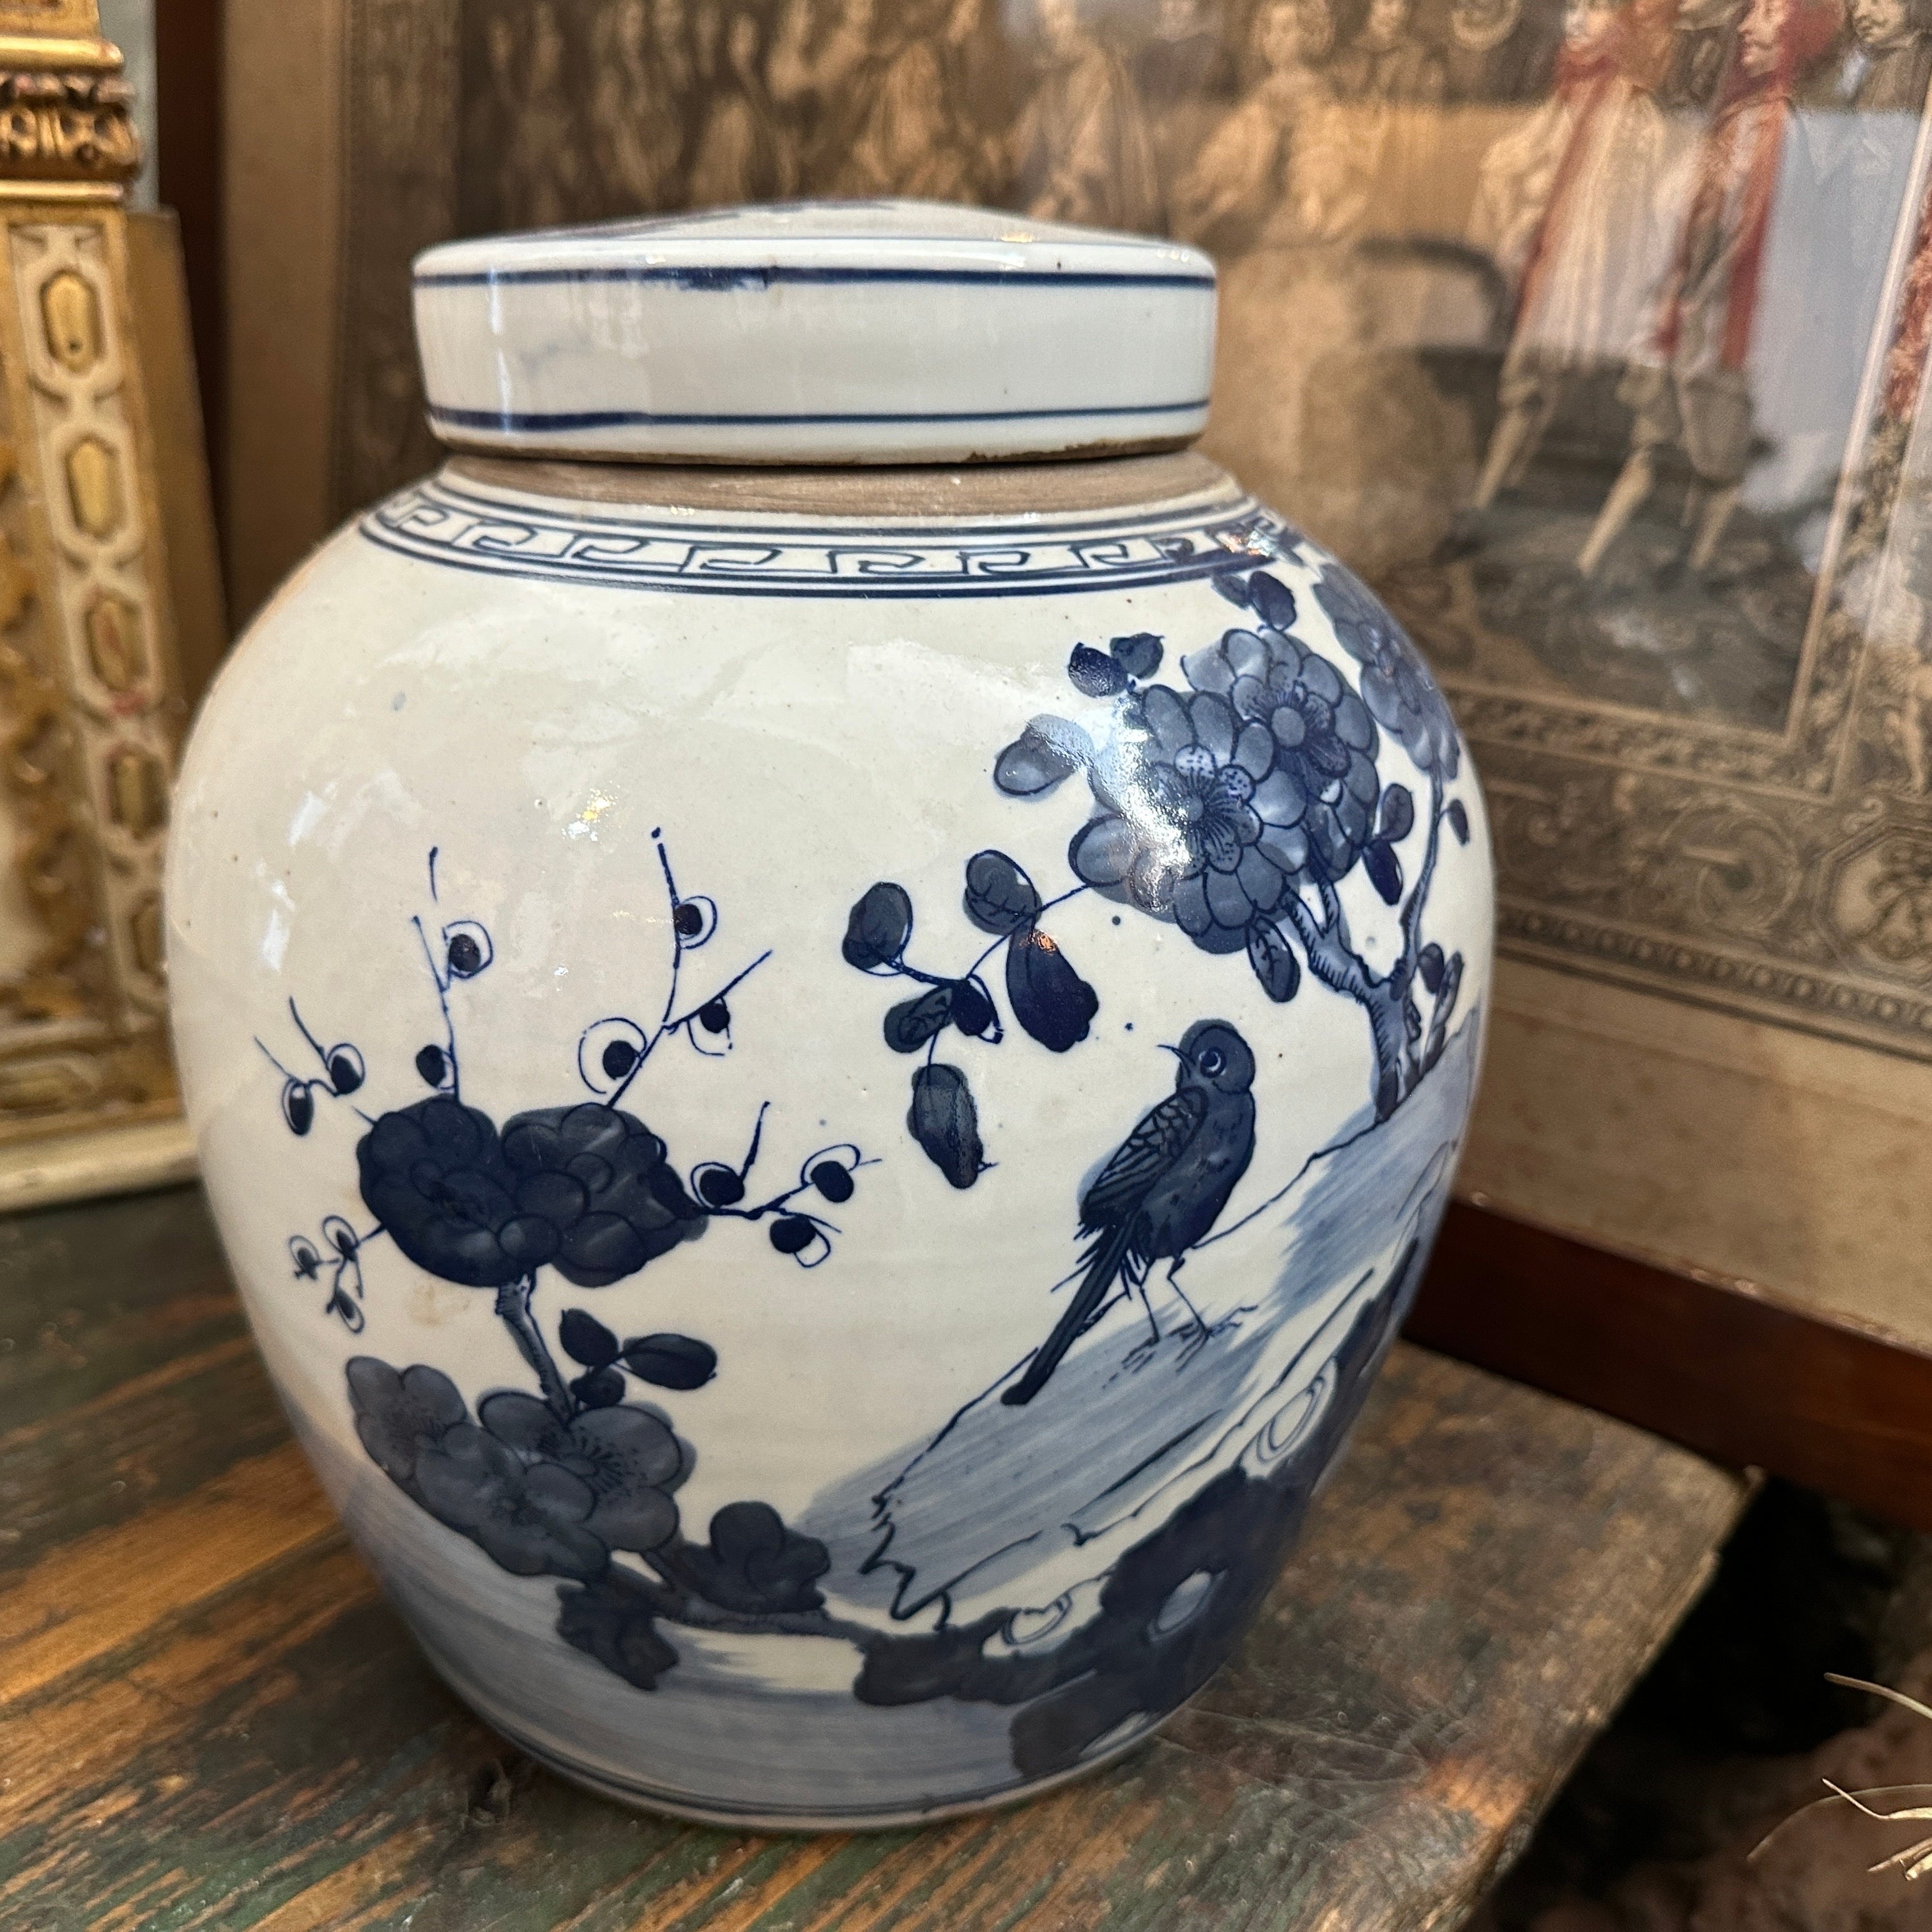 Paire de pots à gingembre en céramique bleue et blanche, fabriqués et peints à la main en Chine dans la deuxième partie du 20e siècle. Ils sont en état d'origine et présentent des signes normaux d'âge. Les céramiques bleues et blanches ont une